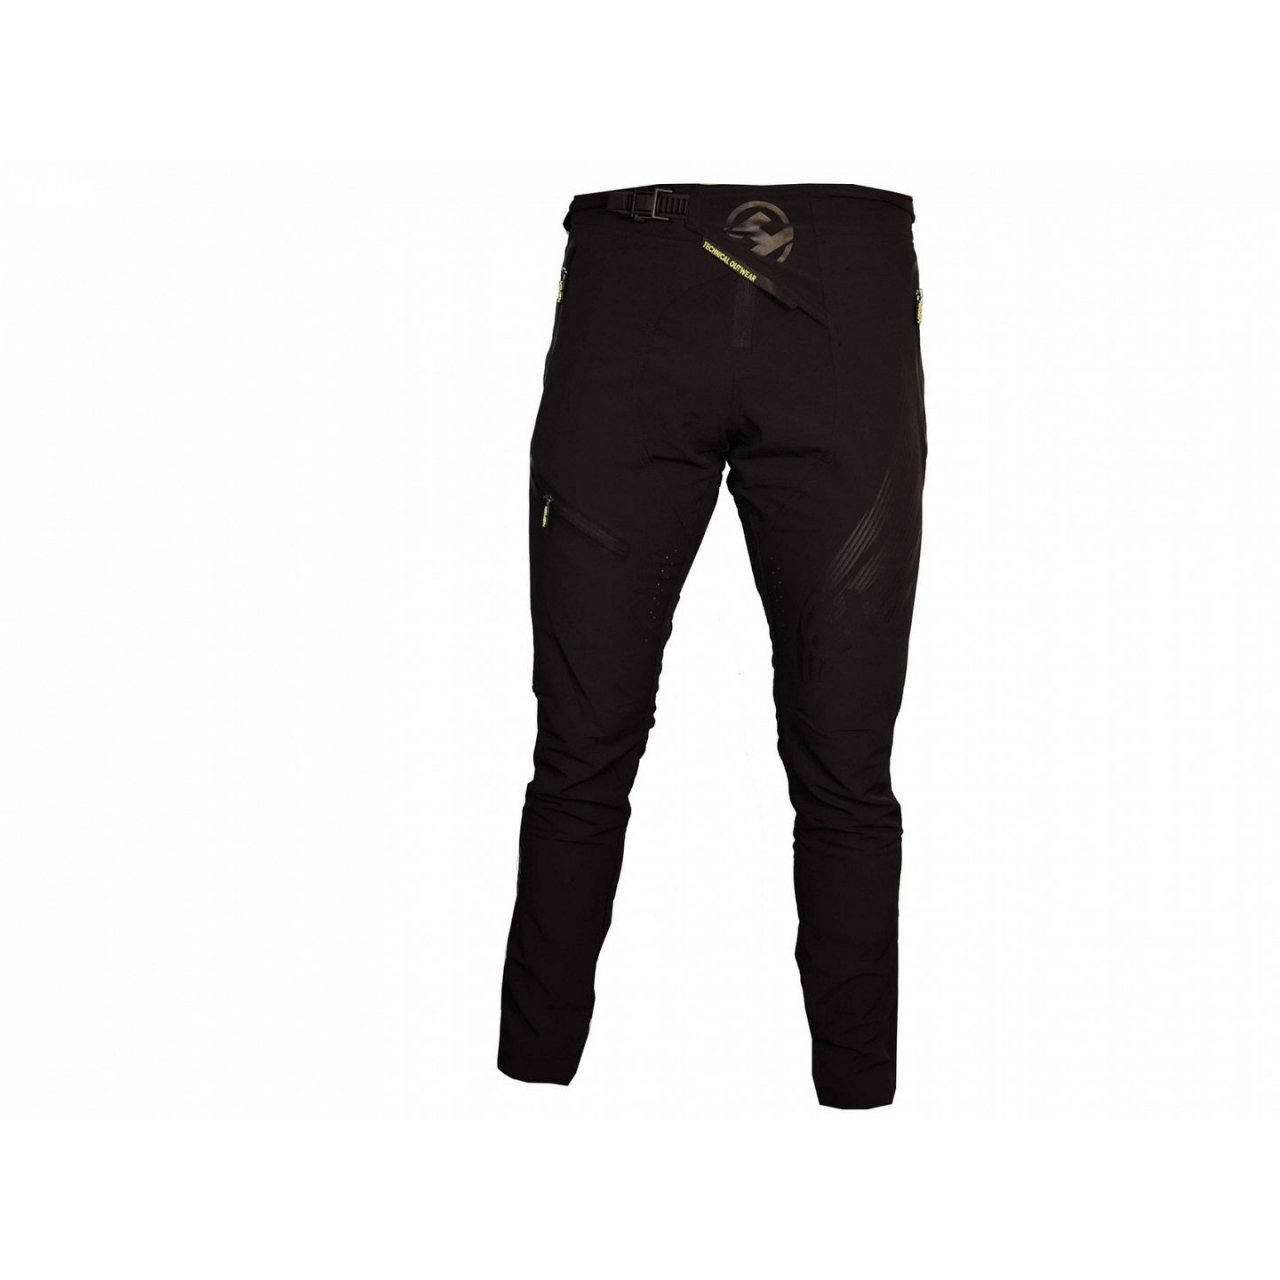 Kalhoty unisex Haven Energizer - černé, XL